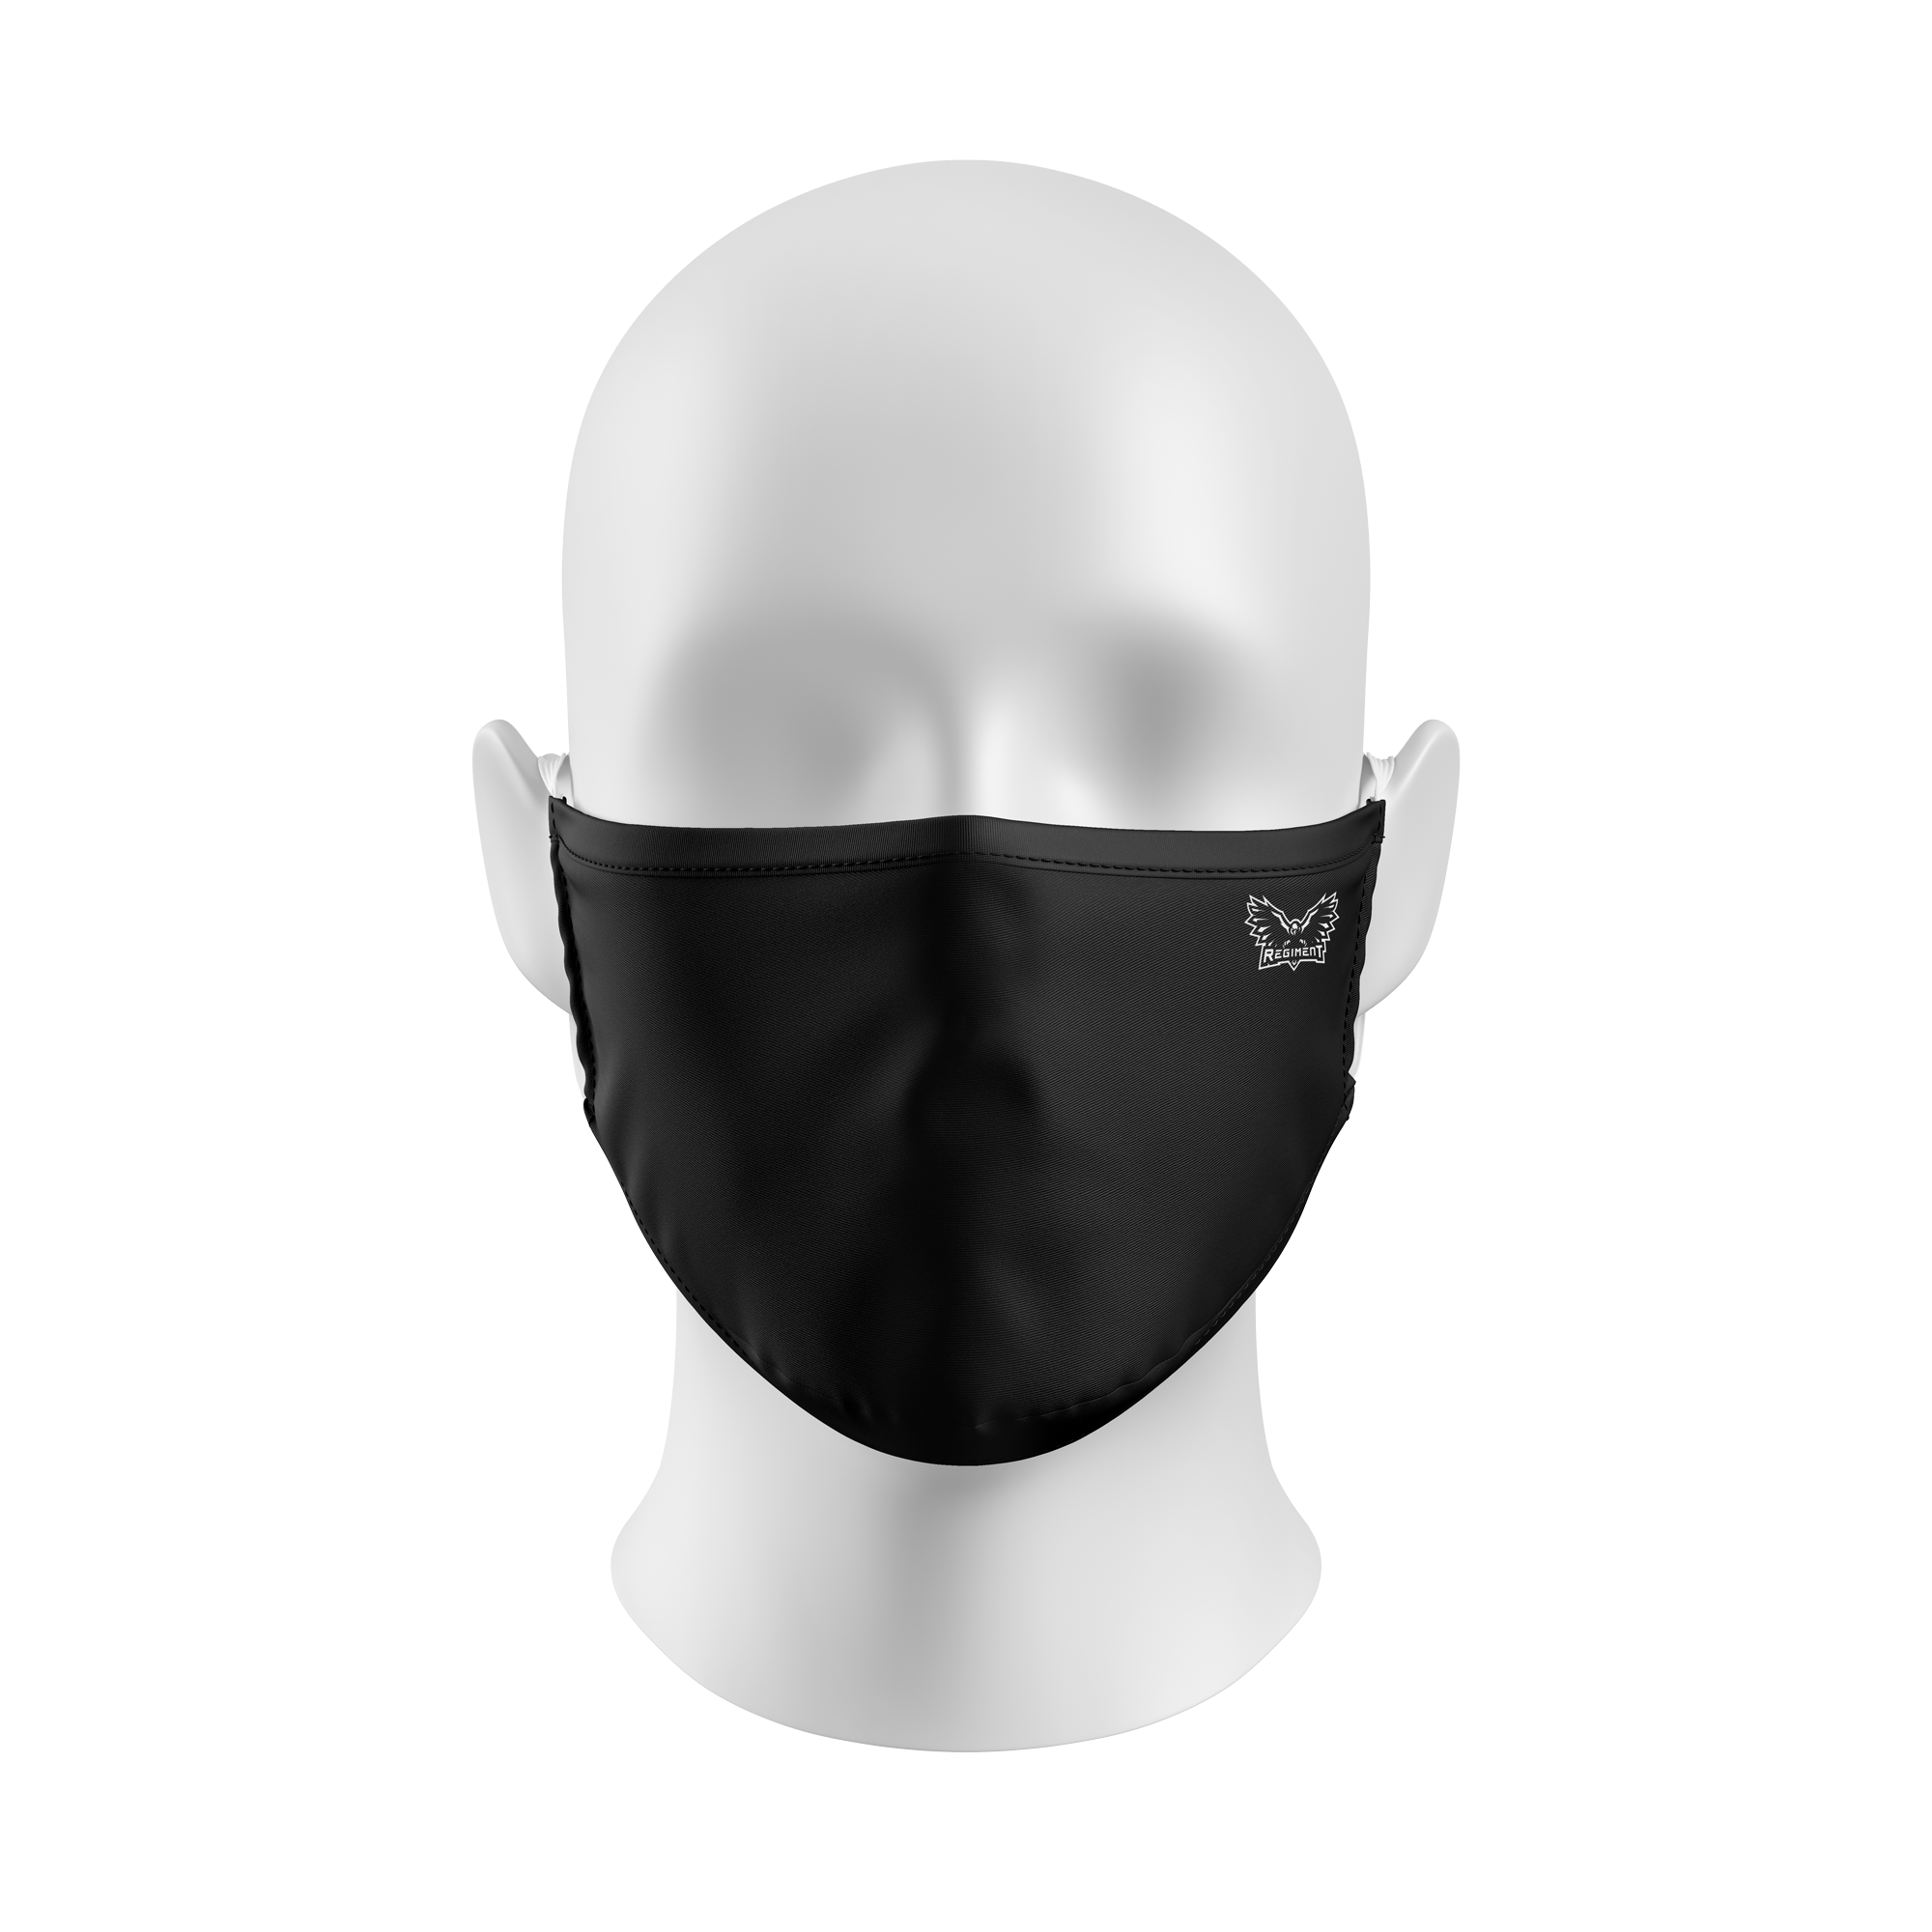 Regiment 2021 Face Masks